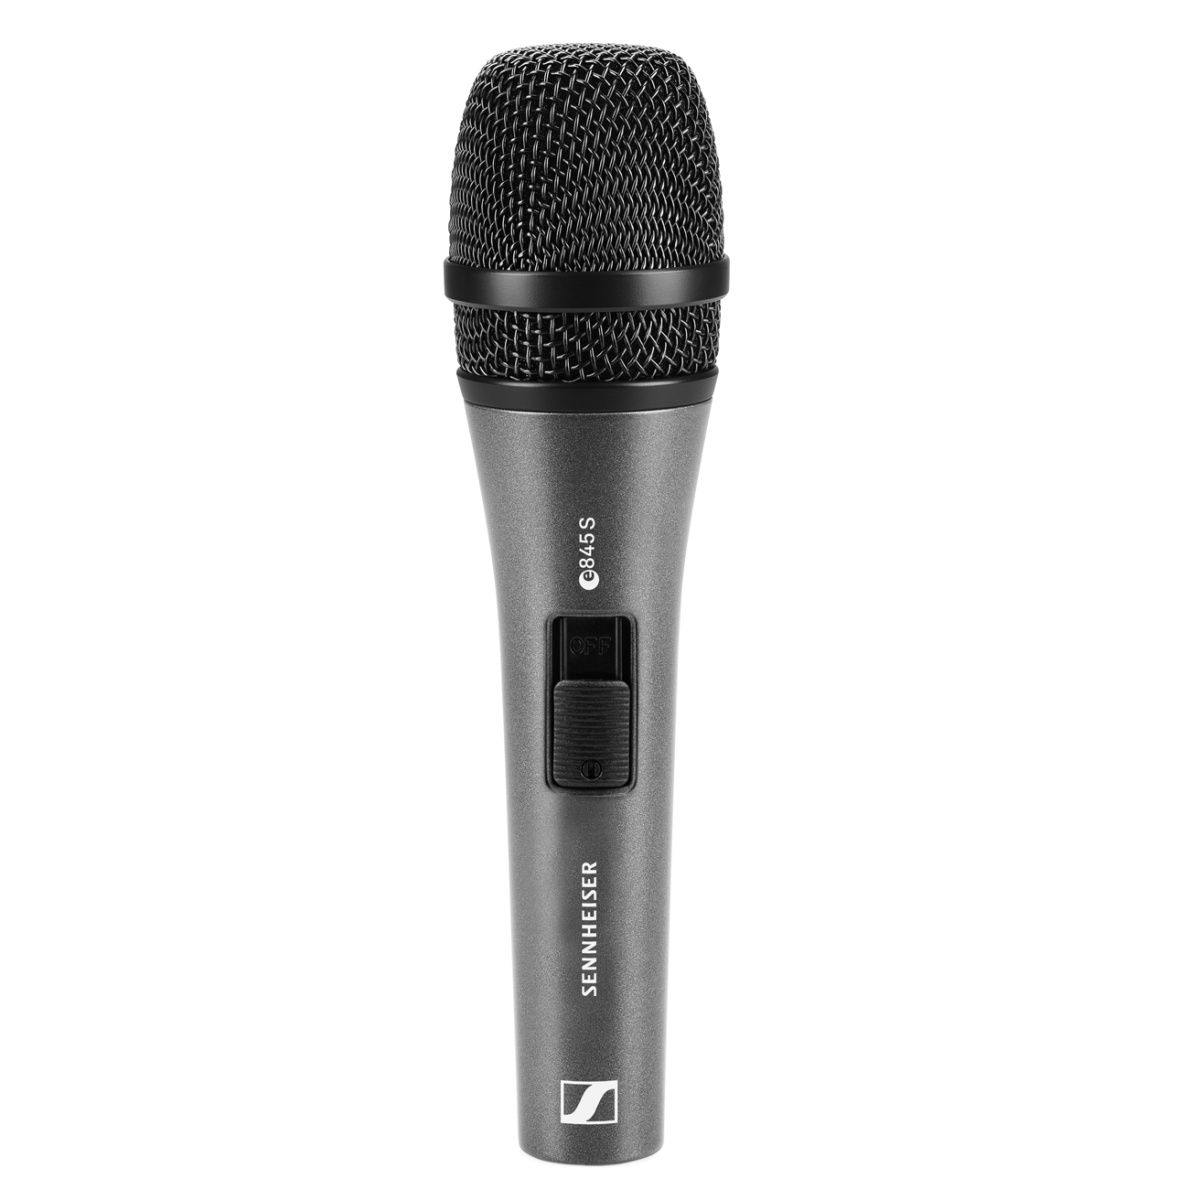 SENNHEISER E 845 S - динамический вокальный микрофон с выкл., суперкардиоида, 40 - 16000 Гц, 200 Ом купить в prostore.me